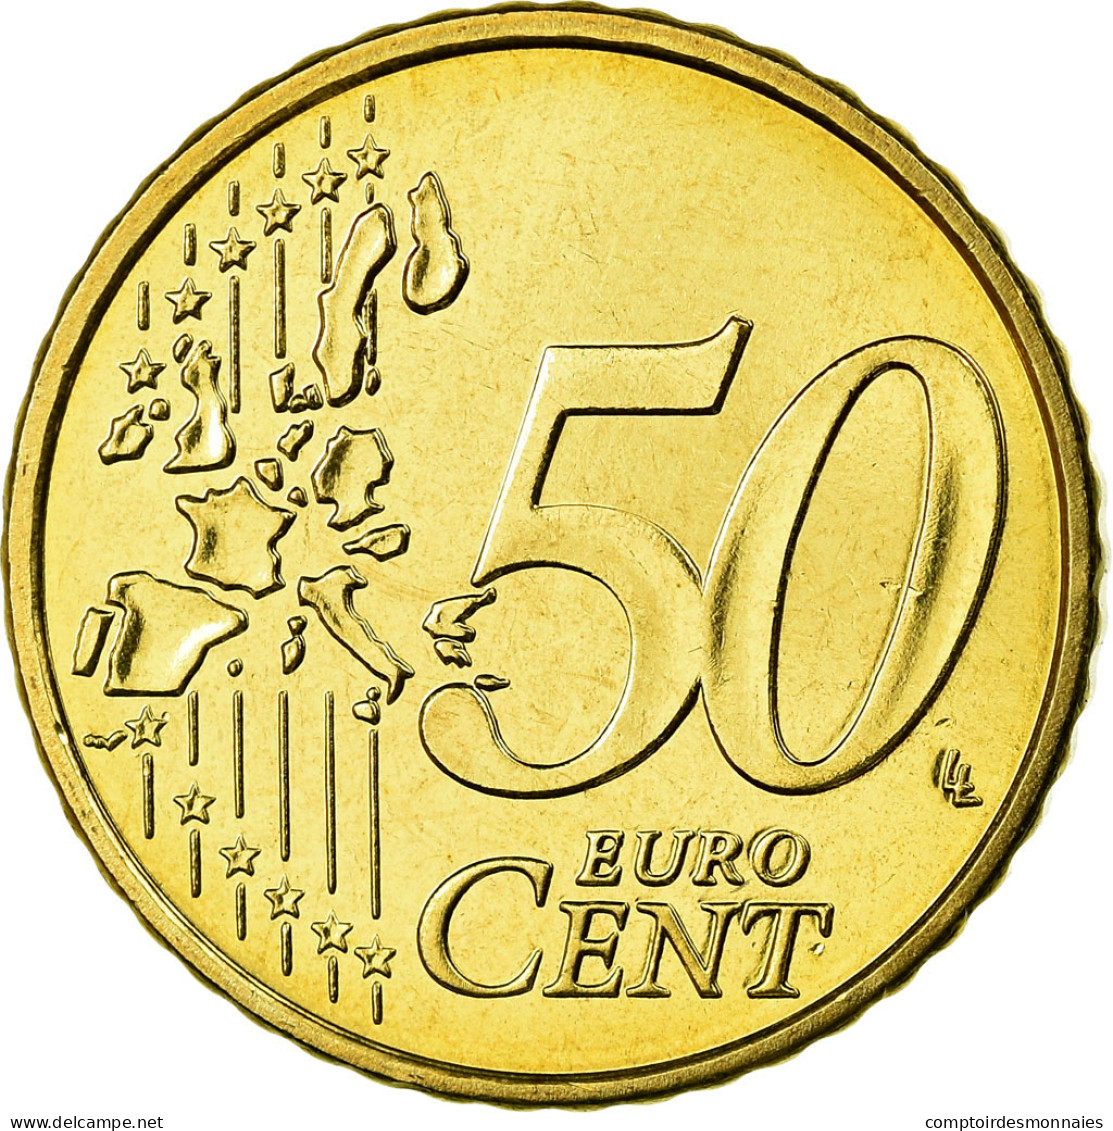 Belgique, 50 Euro Cent, 2005, FDC, Laiton, KM:229 - België